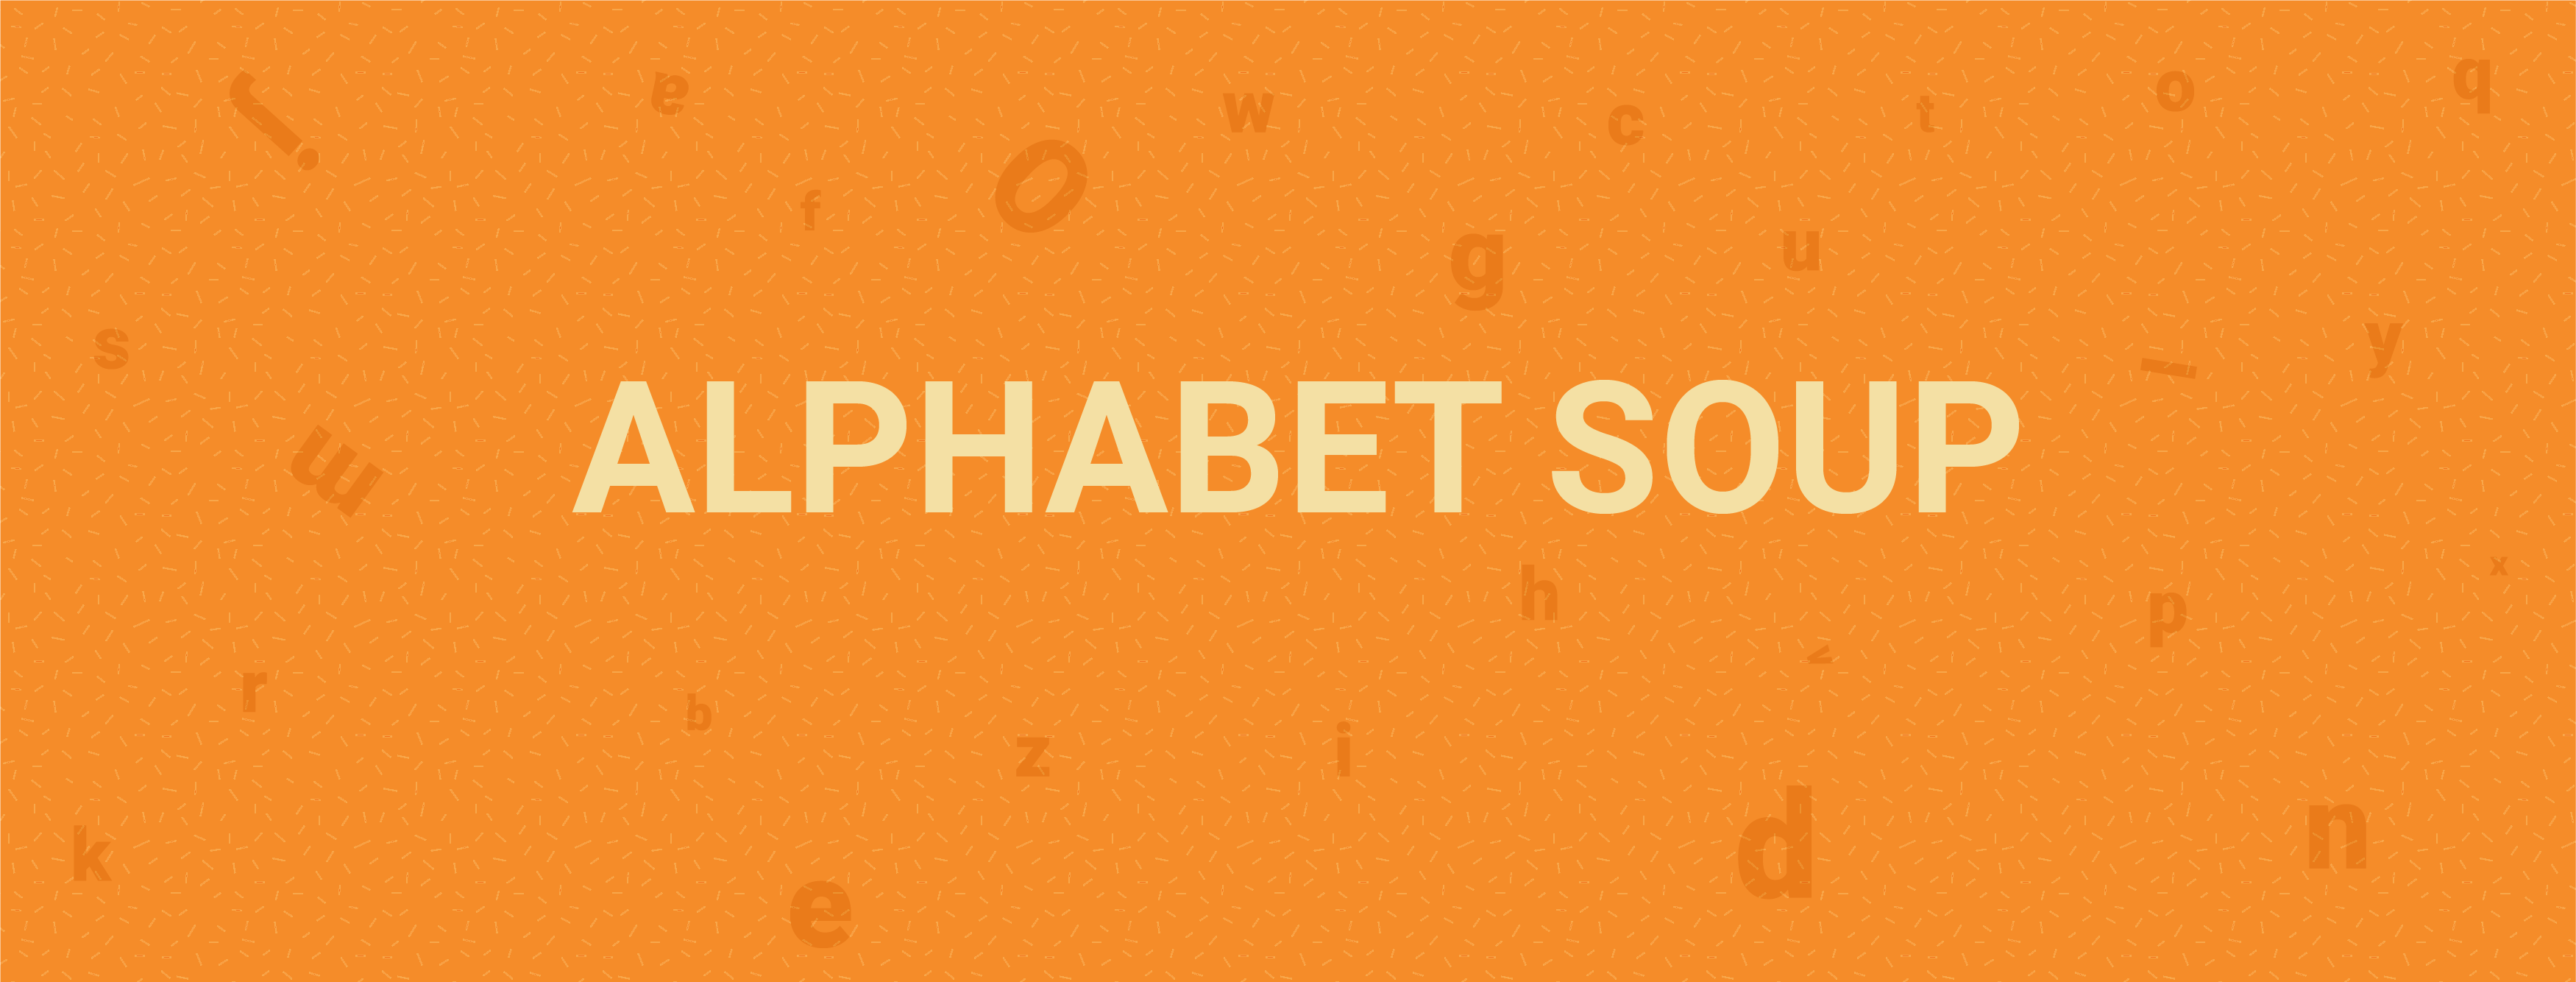 Alphabet Soup 